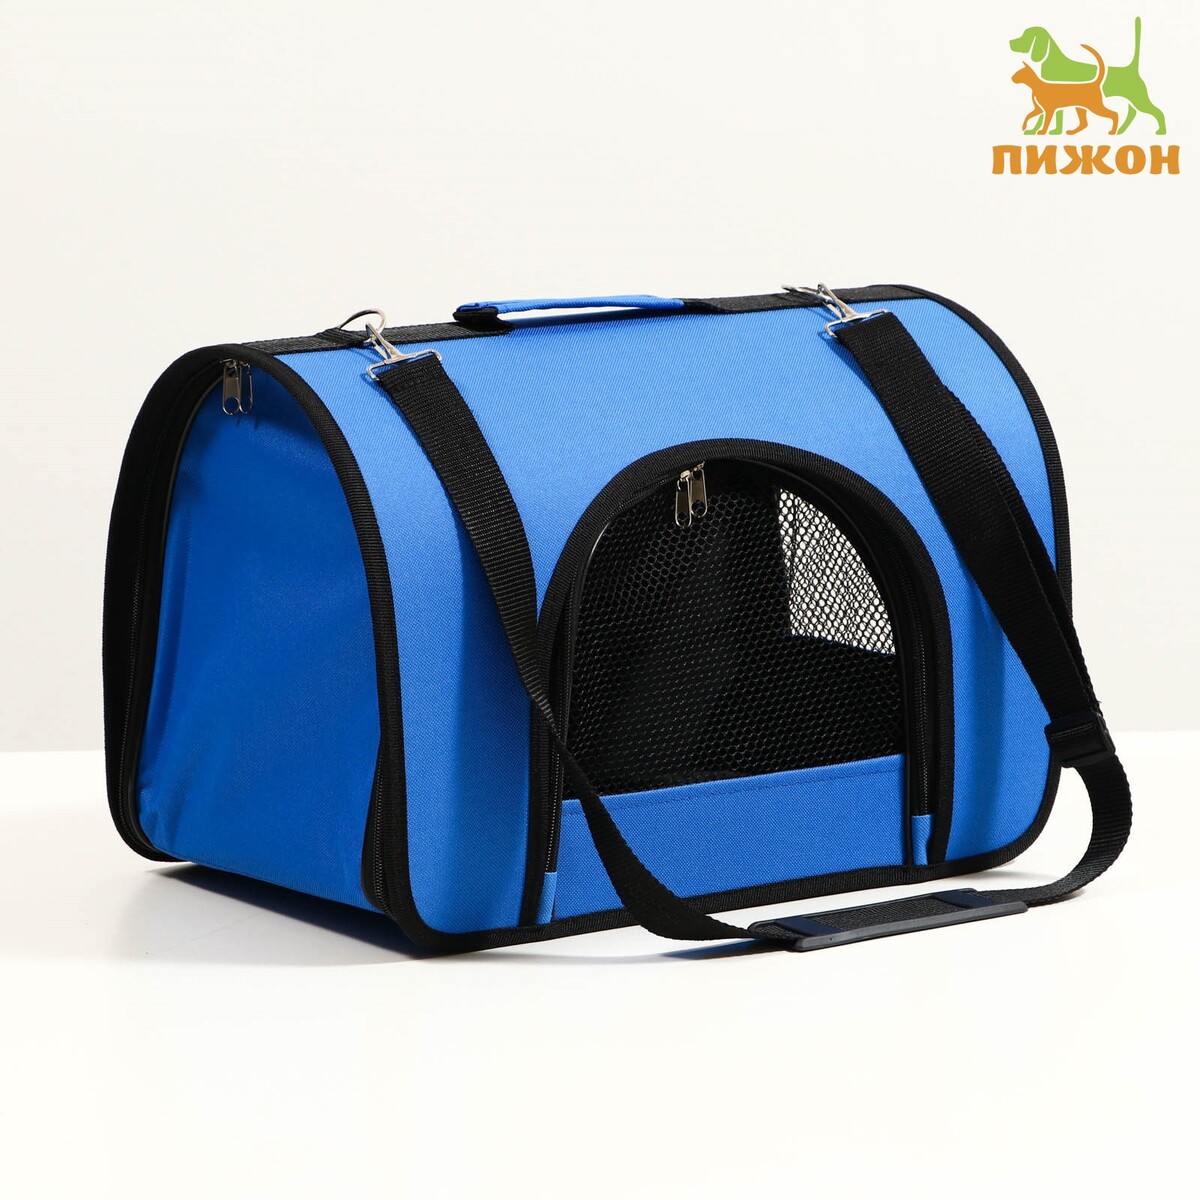 Сумка - переноска для животных, 2 входа, 40 х 25 х 28 см, синяя сумка переноска для животных полукруглая нейлон 42 х 22 х 29 см василек